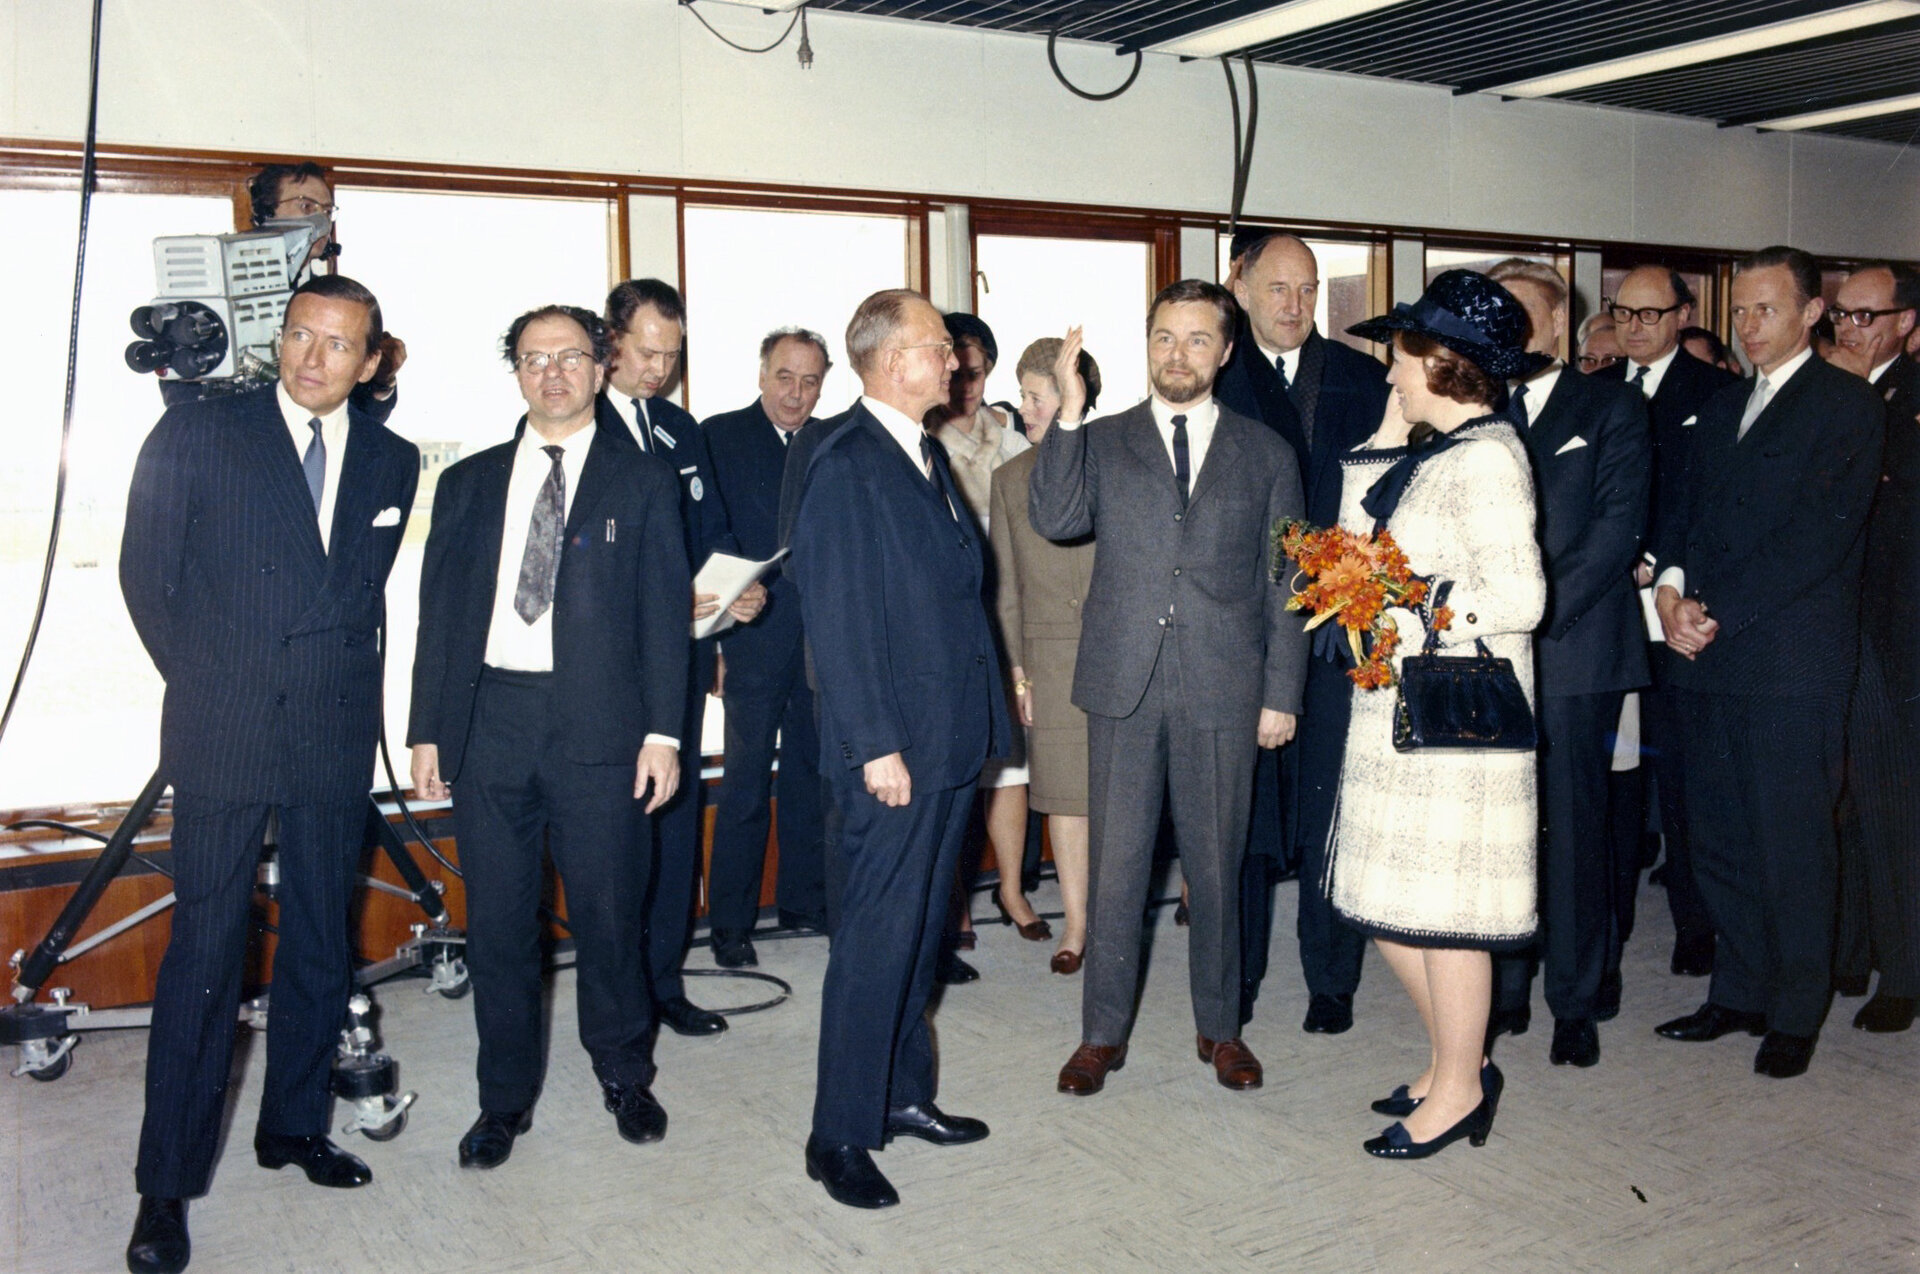 De toenmalige Prinses Beatrix bij de inwijding van ESTEC in 1968